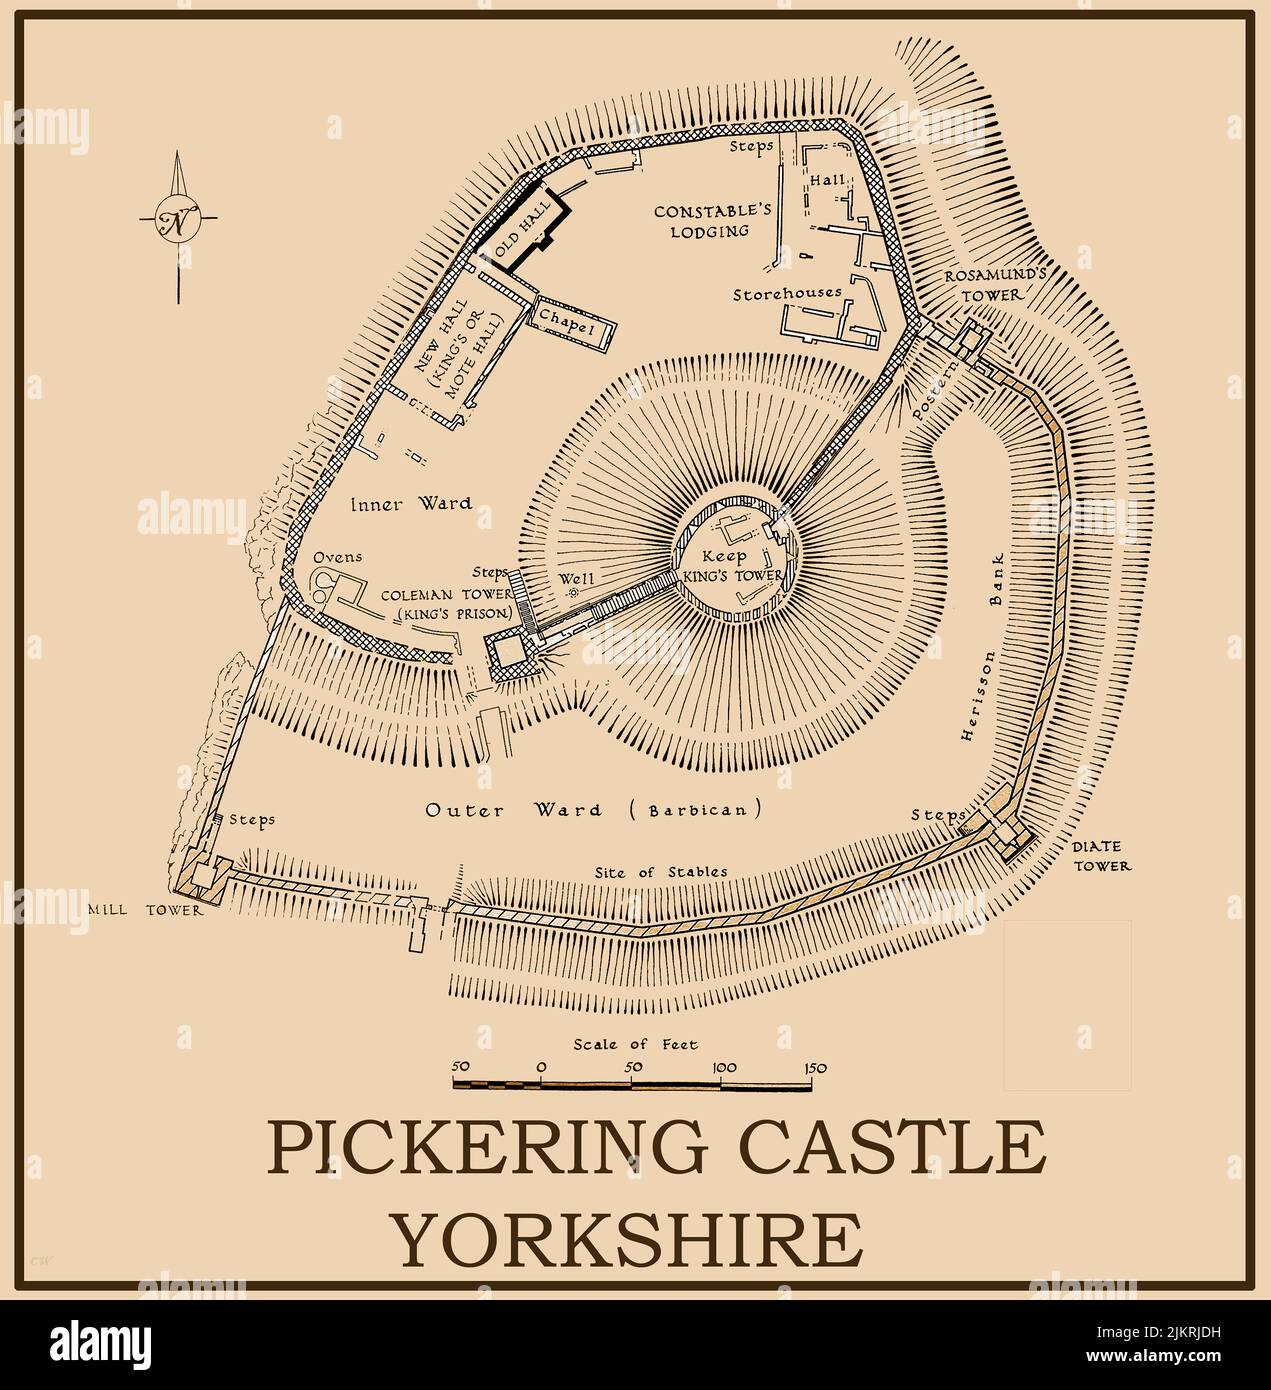 Une carte ou un plan d'époque du château de Pickering, dans le Yorkshire, au Royaume-Uni. La fortification de motte-et-bailey a été précédée d'un bois de 12th siècle et de la terre motte construite par les Normands sous William le Conquérant . Les fortifications en pierre datent du 13th siècle. Il a été construit pour maintenir le contrôle de la région après l'exploitation du Nord. Banque D'Images